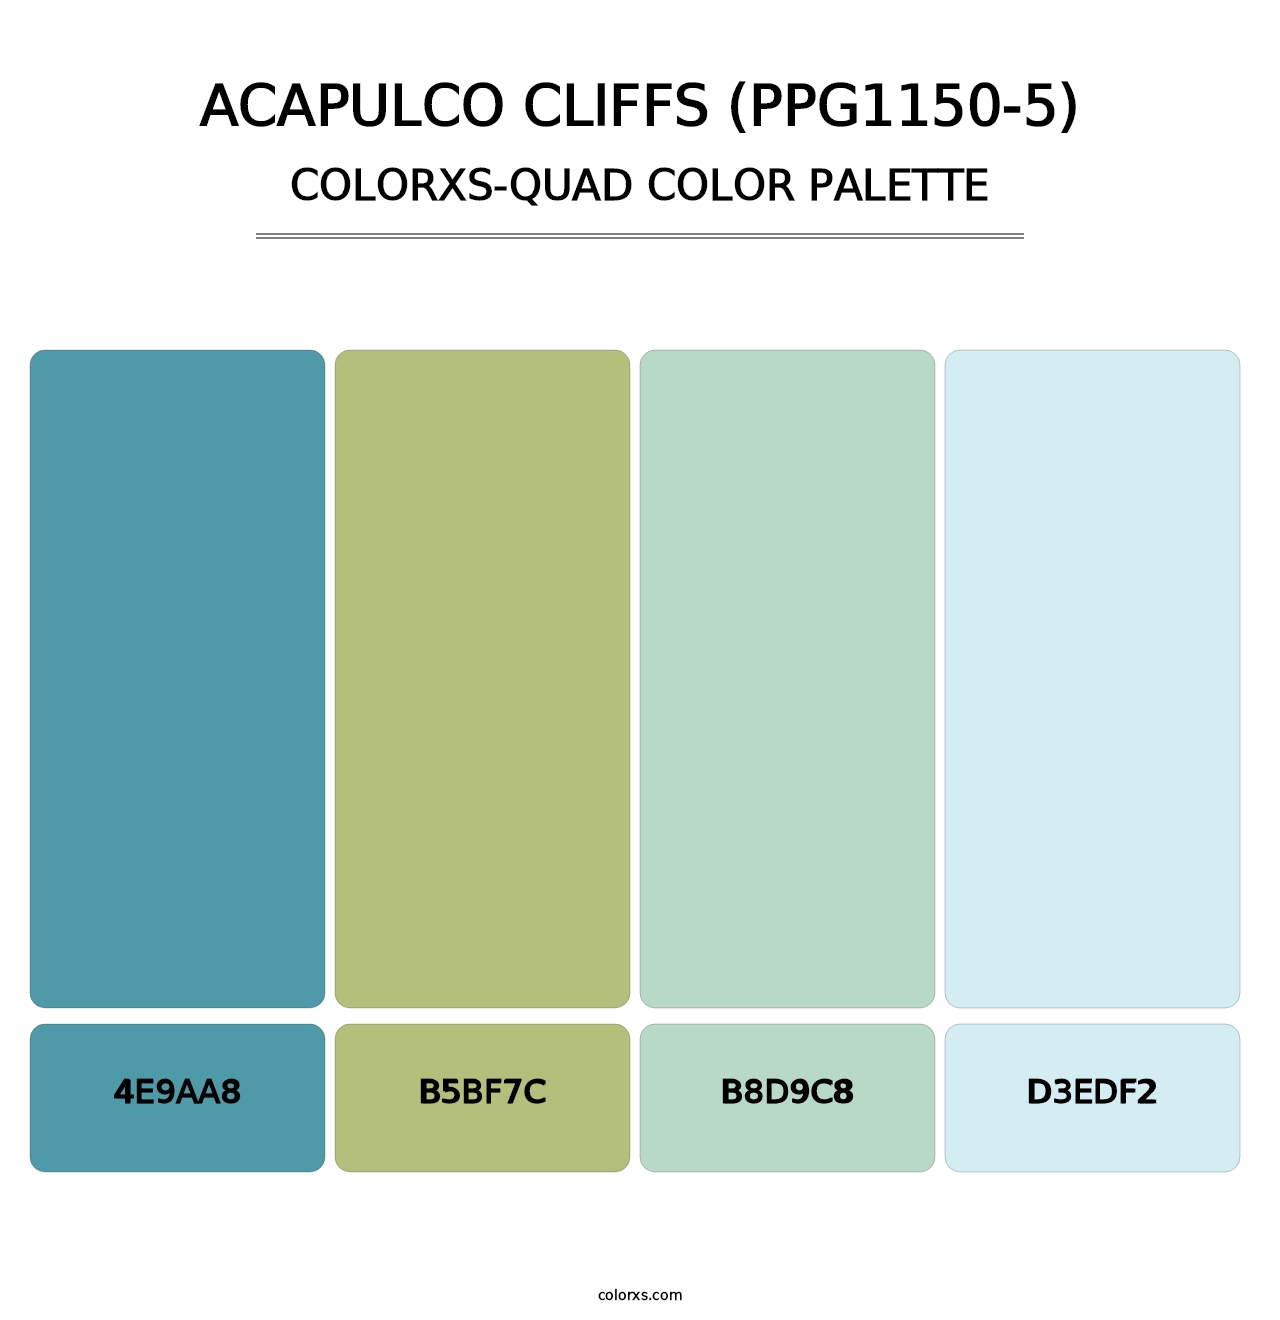 Acapulco Cliffs (PPG1150-5) - Colorxs Quad Palette